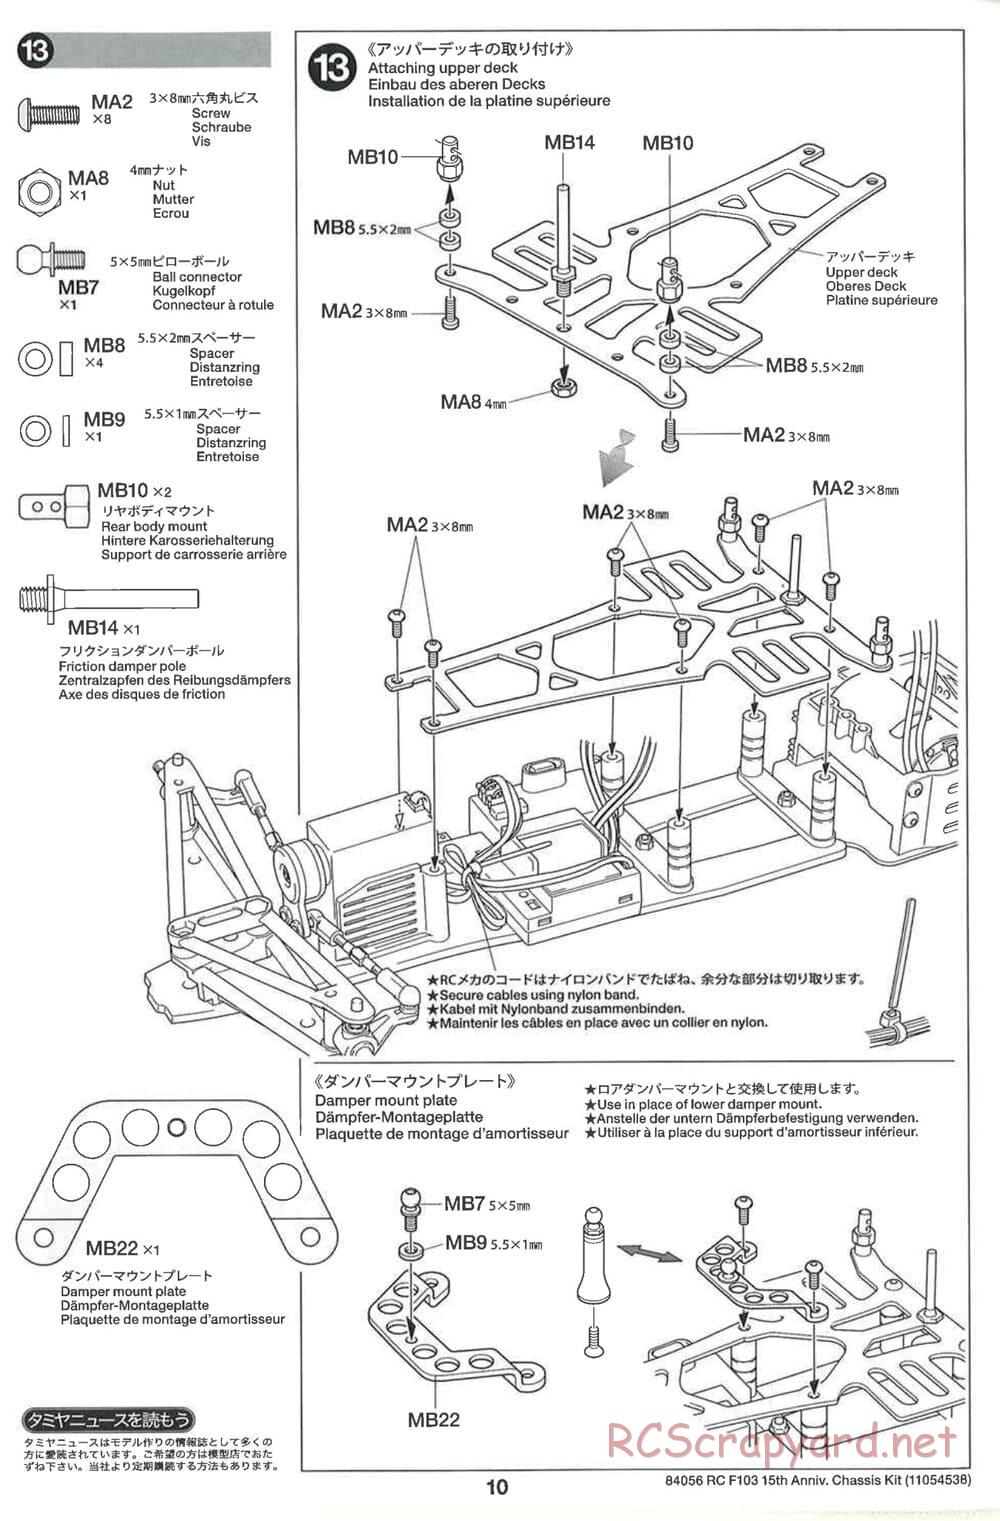 Tamiya - F103 15th Anniversary Chassis - Manual - Page 10